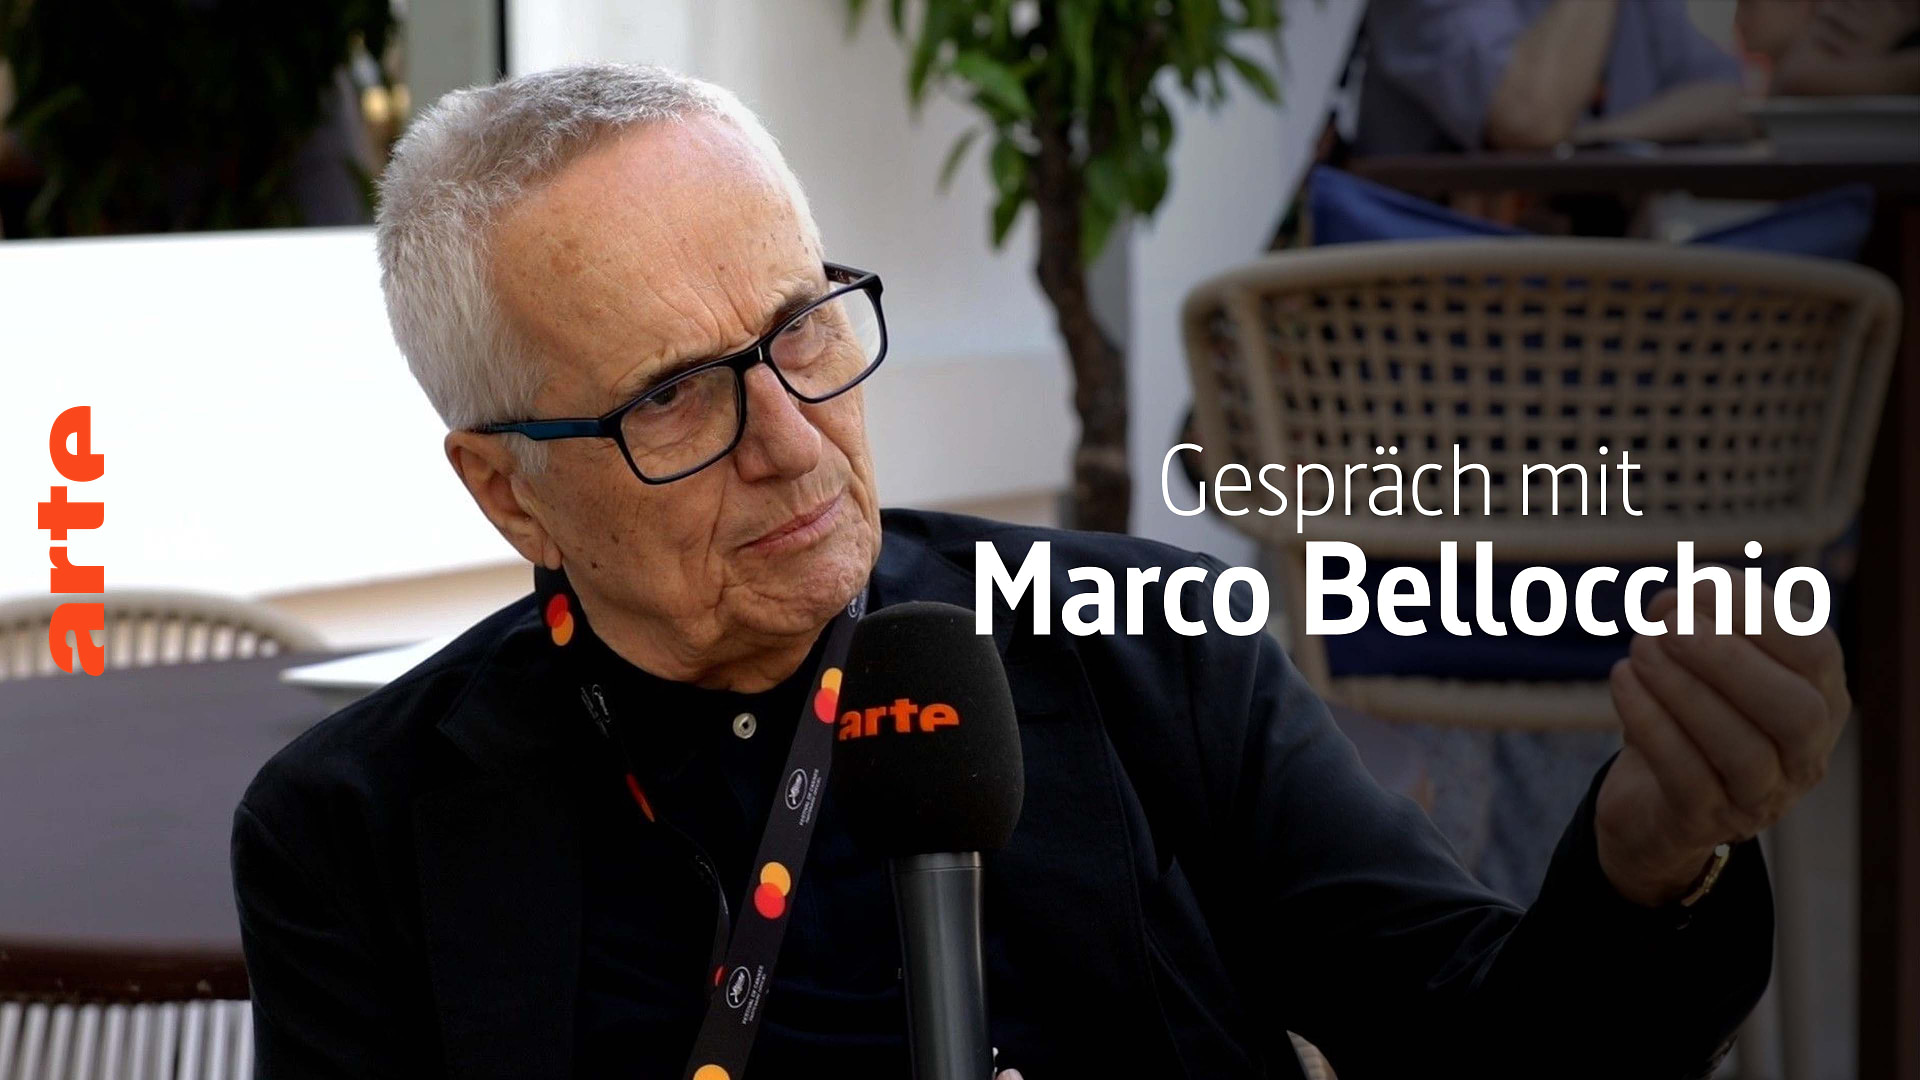 Gespräch mit Marco Bellocchio über Rapito